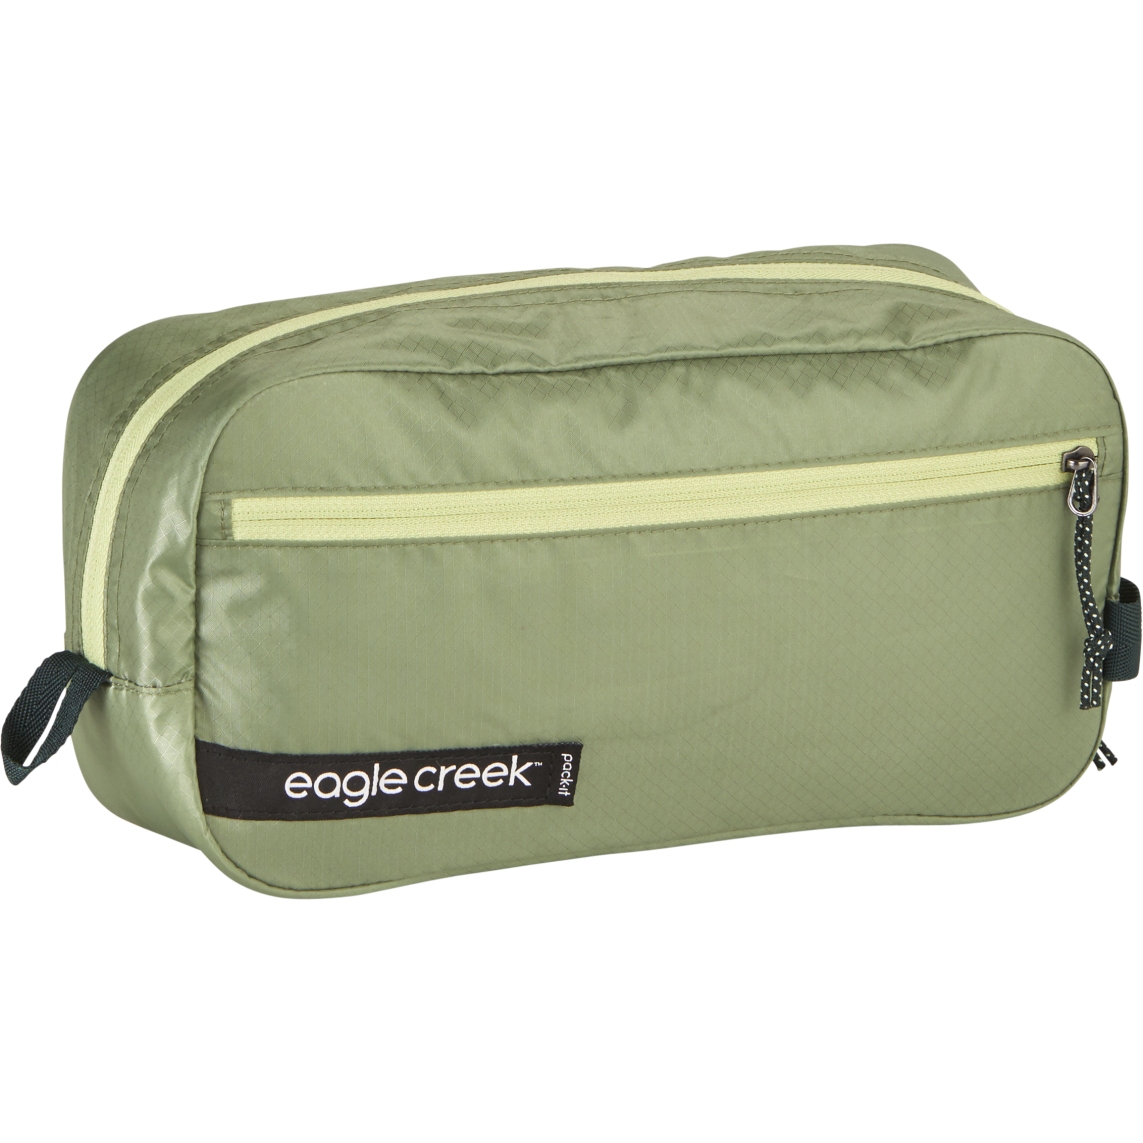 Produktbild von Eagle Creek Pack-It Isolate Quick Trip S - Waschtasche - mossy green